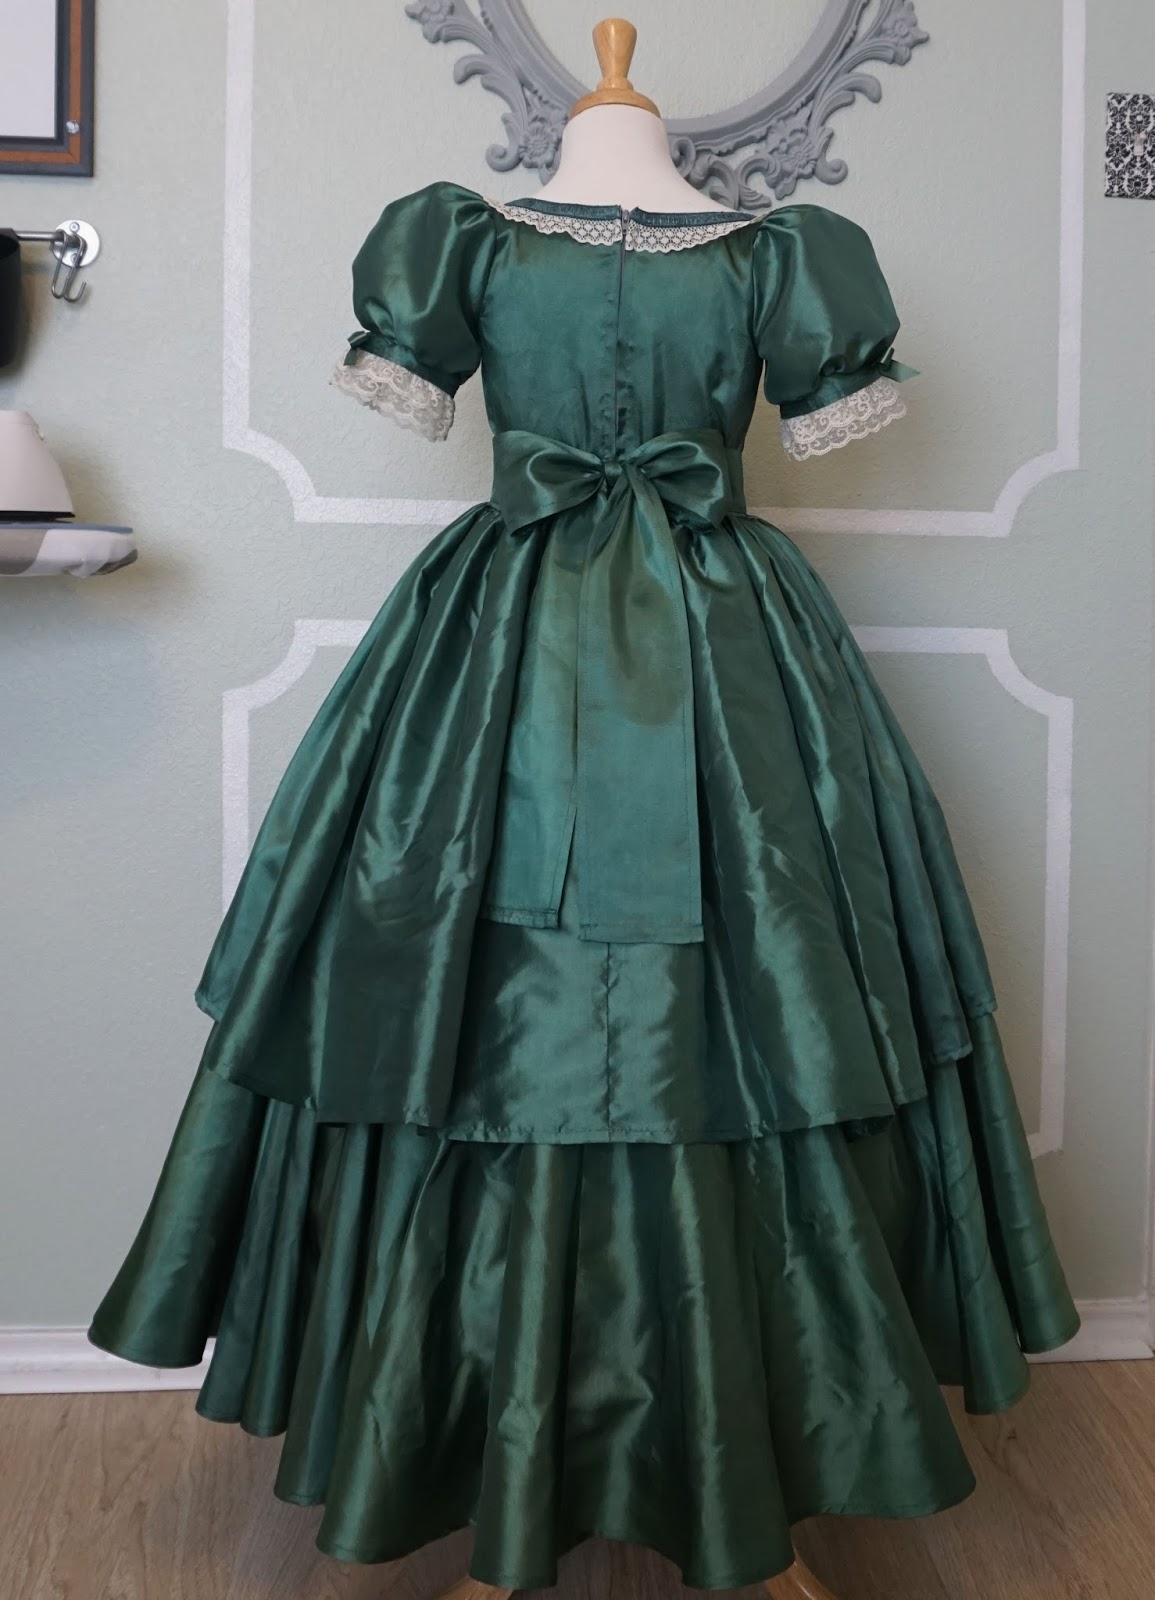 Aux Belles Choses: Queen Victoria Dress